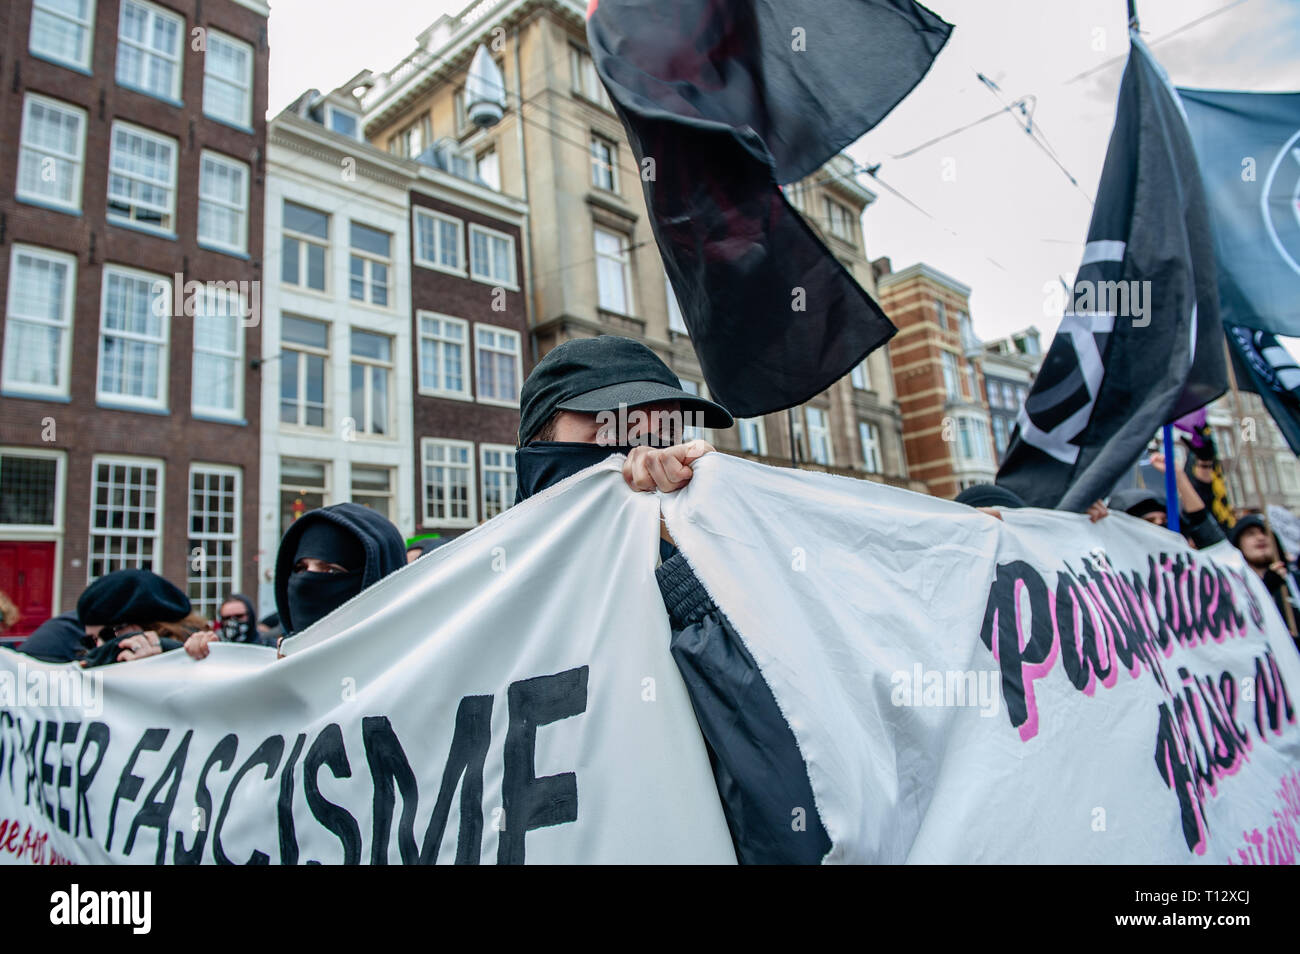 Ein Mann wird gesehen, bedeckte sein Gesicht, während Sie zwei Antifa große Banner während der Demonstration. Tausende von Menschen an den Dam Platz im Zentrum von Amsterdam versammelt, um gegen Rassismus und Diskriminierung zu demonstrieren. Sie bitten um Vielfalt und Solidarität, gegen alle Formen von Rassismus und Diskriminierung. Auch gegen die beiden politischen Parteien der extremen Rechten in den Niederlanden, die Pvv und der FvD, die ihre Macht während der letzten Wahlen im Land zugenommen haben. Eine kleine rechtsextreme Gruppe zeigte sich während der Wanderung zwei große Plakate und Schreien bei den Demonstranten. Stockfoto